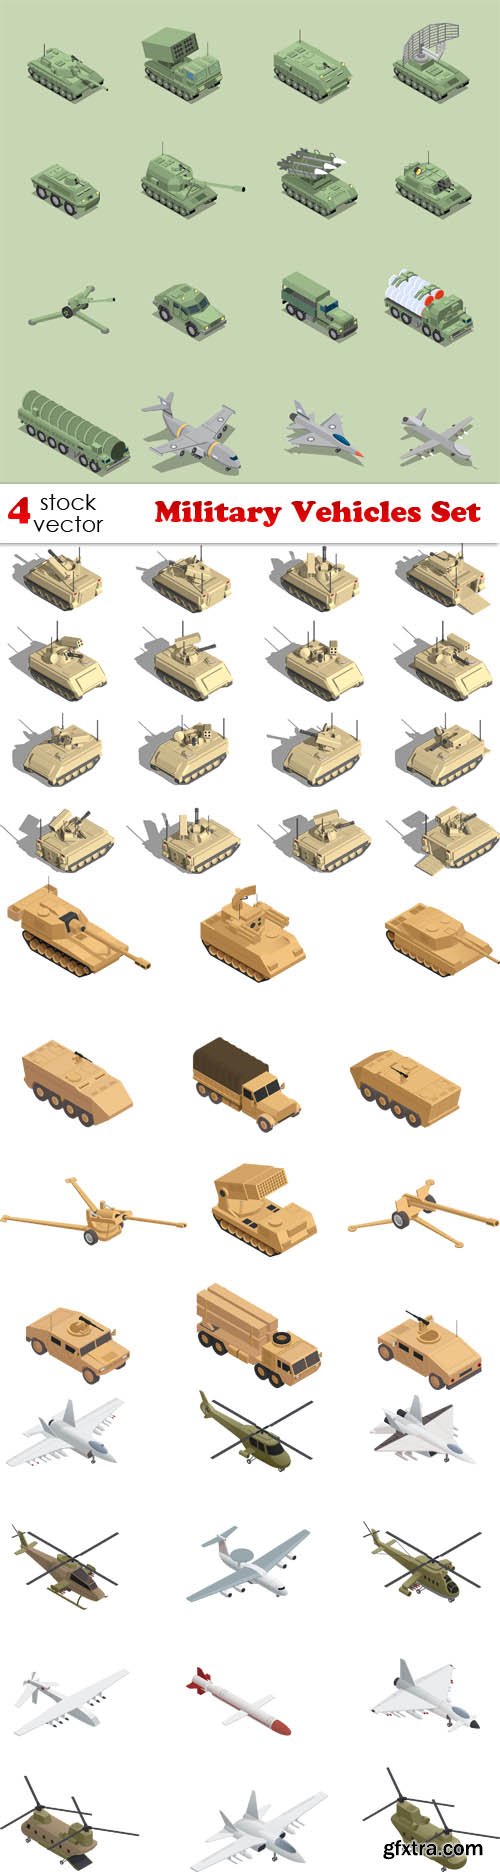 Vectors - Military Vehicles Set